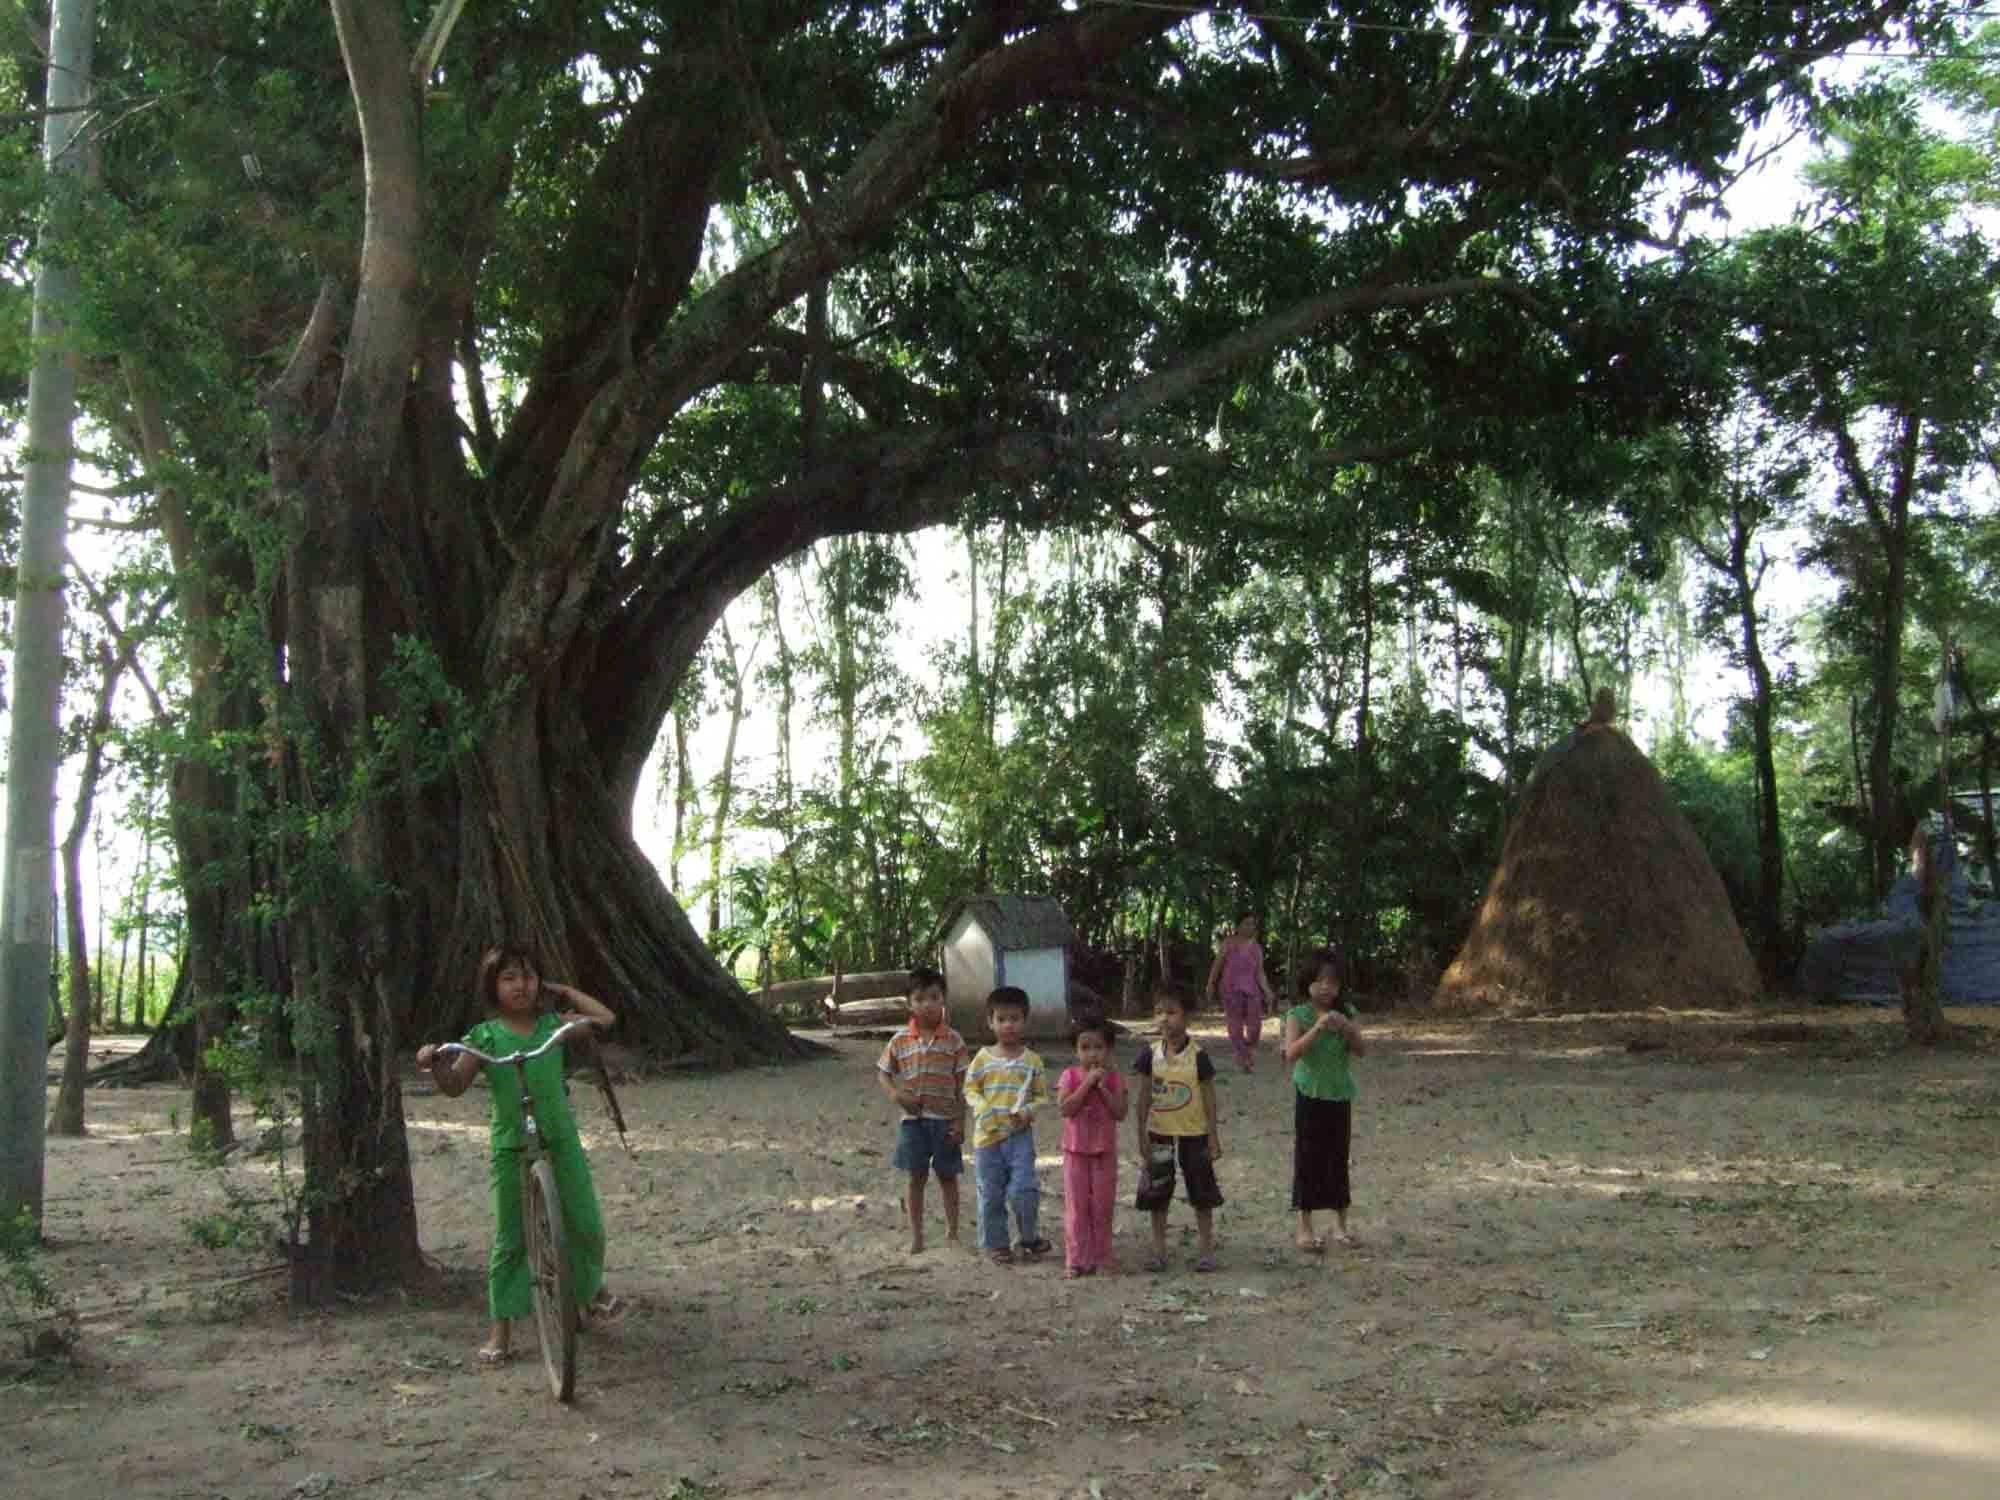 Dưới cây da có một chiếc miếu thờ (trong ảnh, trẻ em vô tư vui đùa dưới gốc cây da dợp bóng mát).